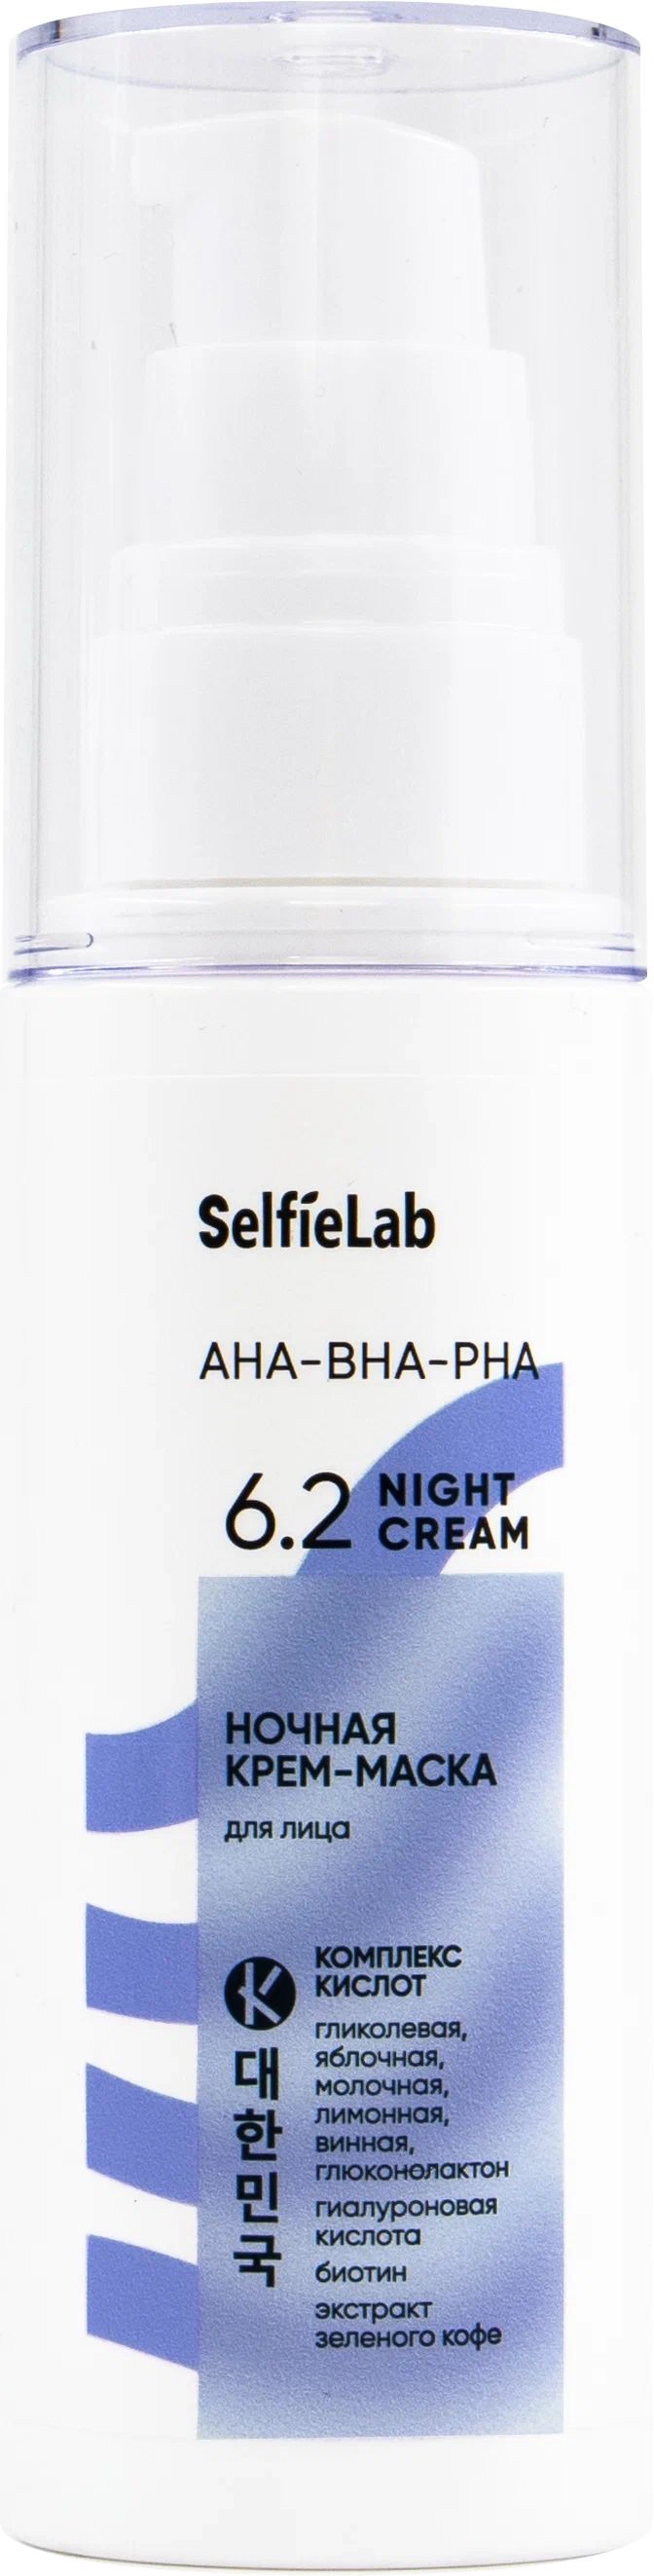 Маска-крем для лица SelfieLab AHA-BHA-PHA ночная 50 г